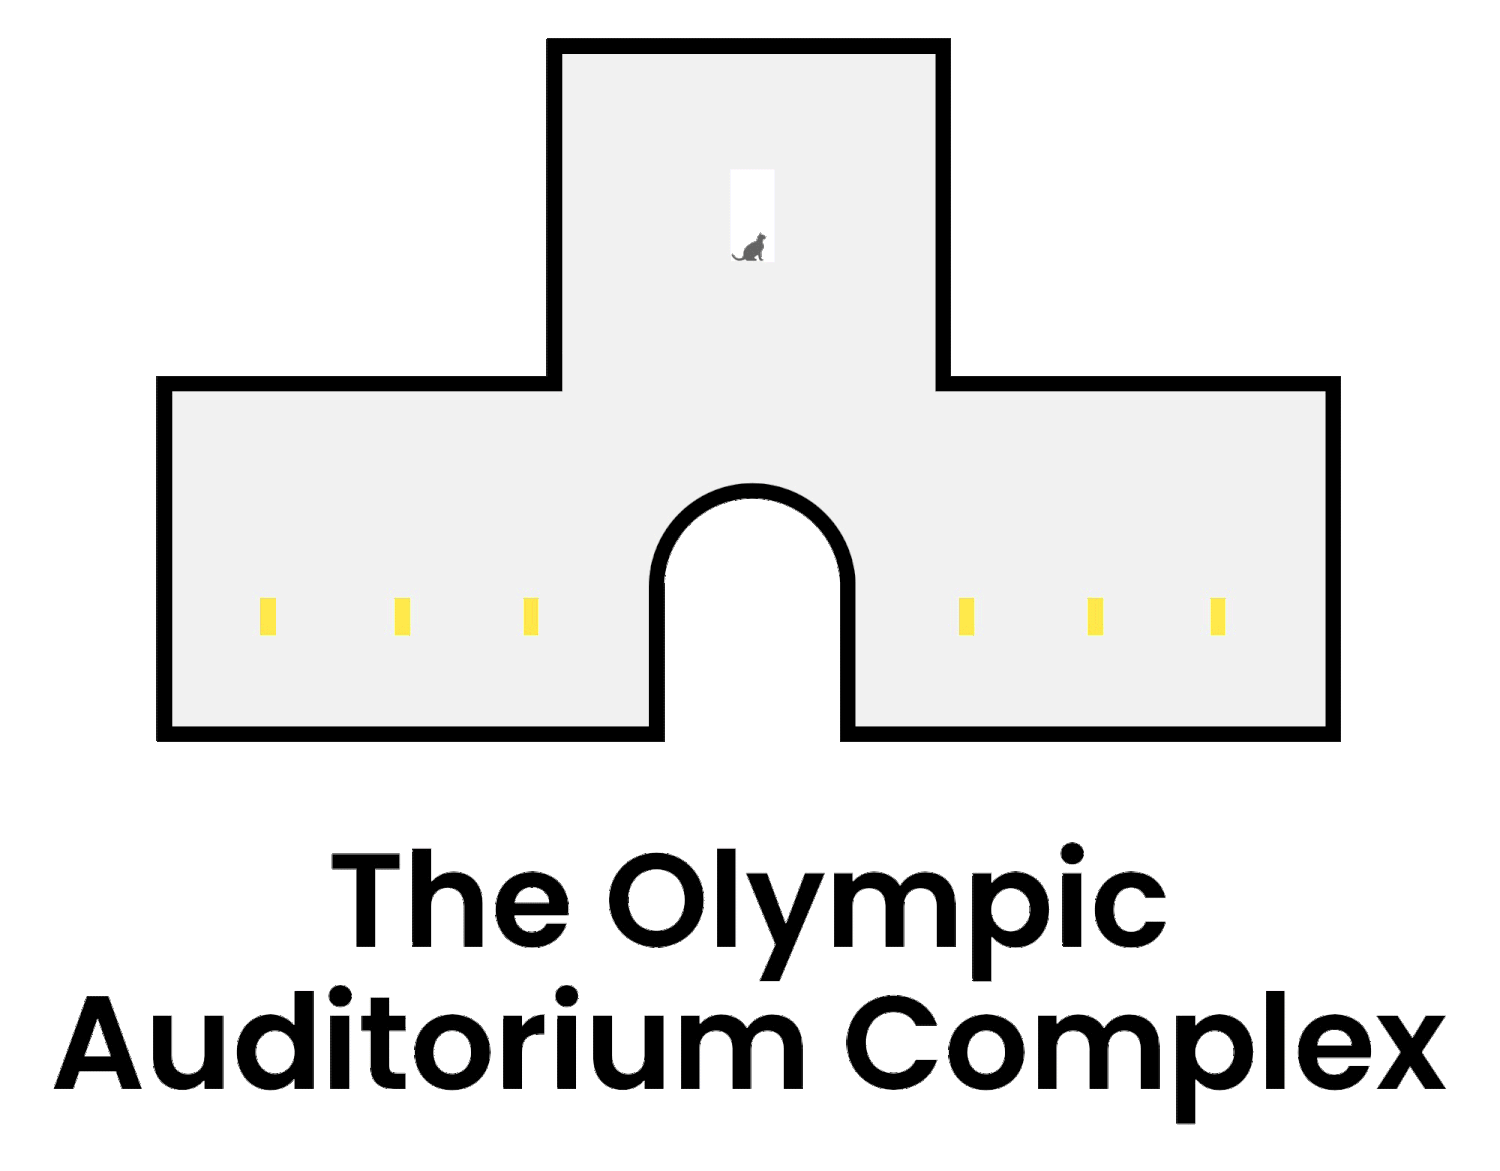 The Olympic Auditorium Complex